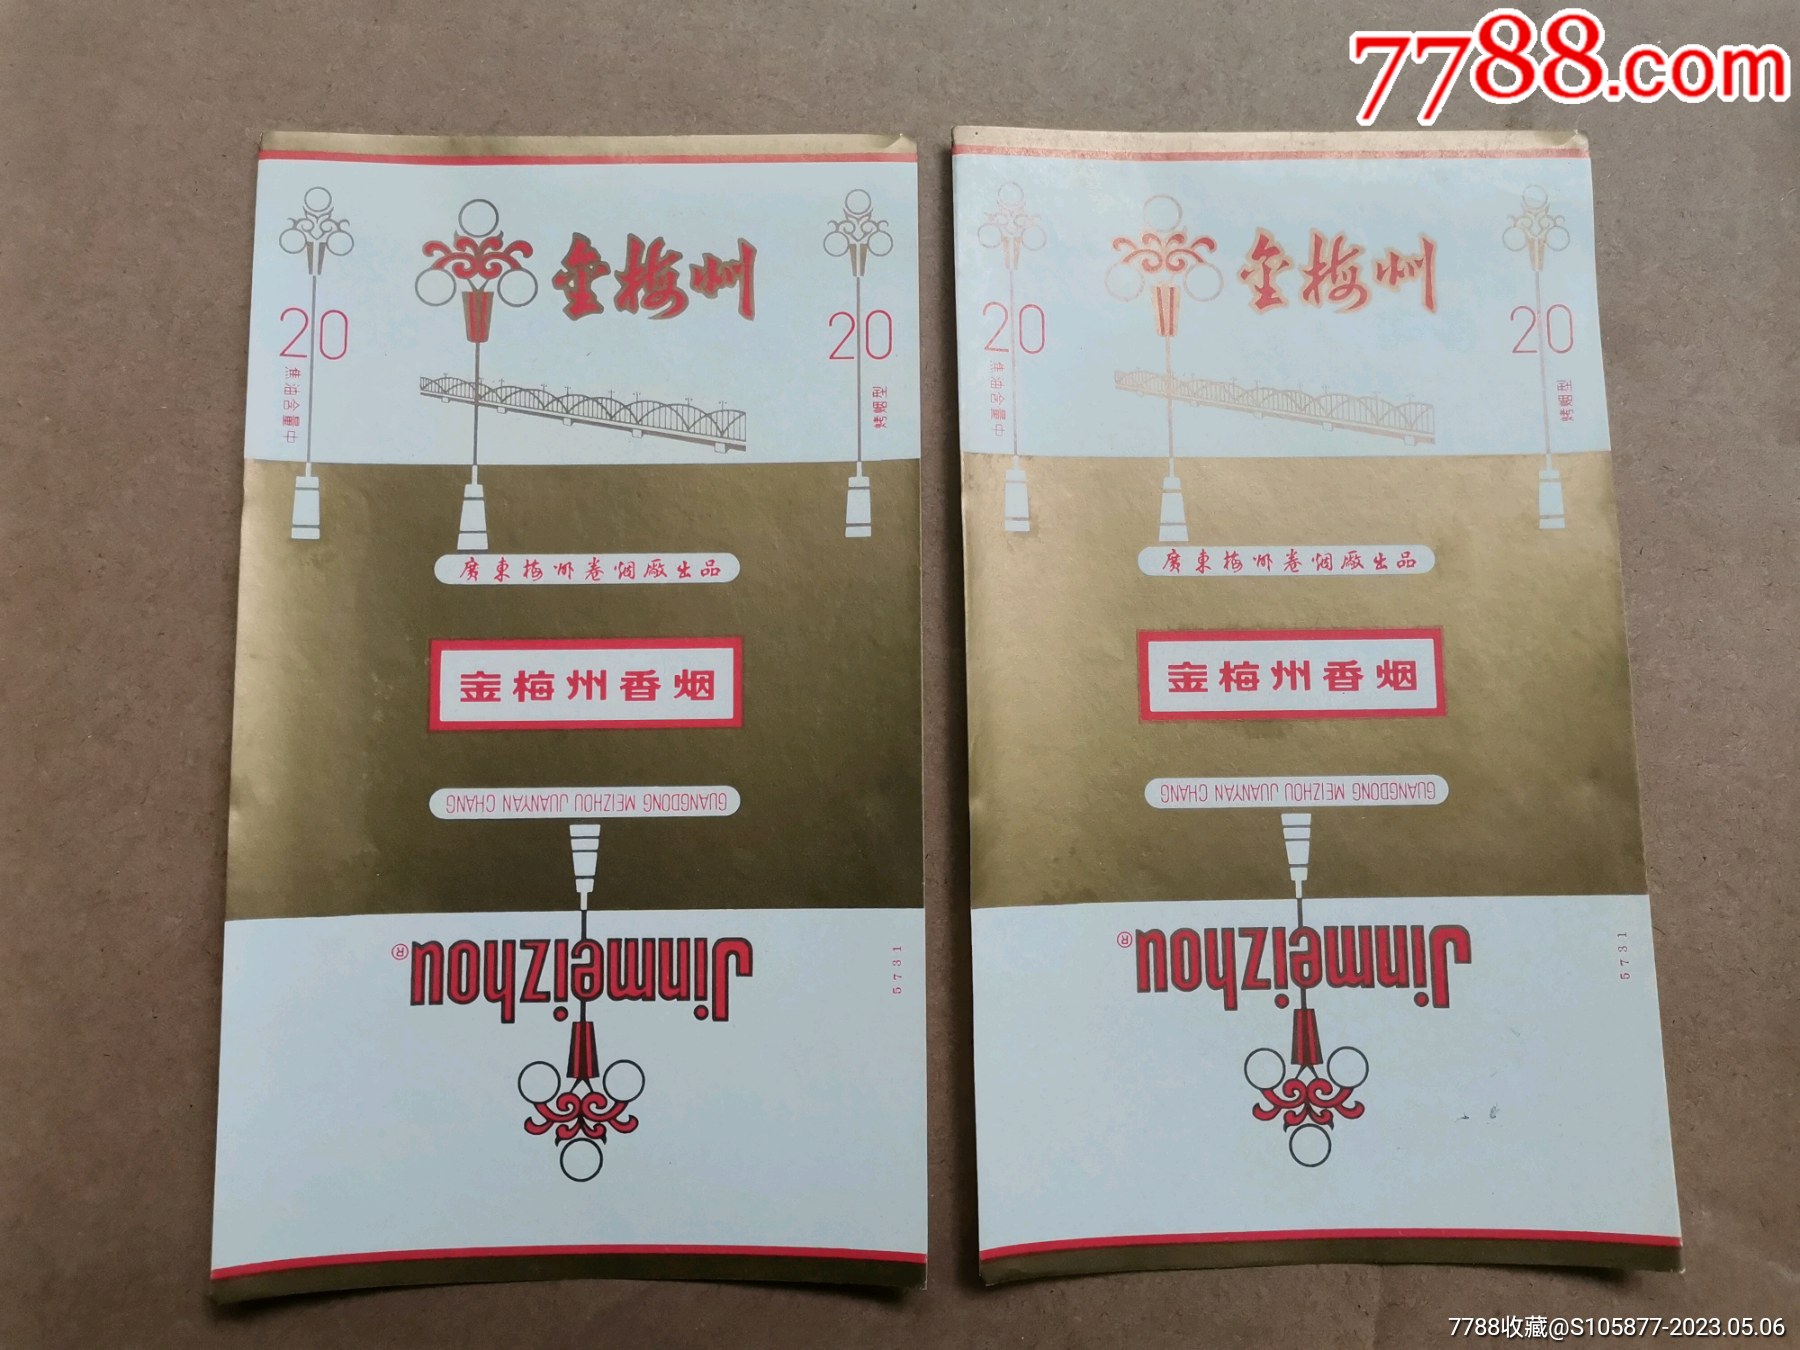 广东梅州卷烟厂出品的金梅州香烟烟标两张